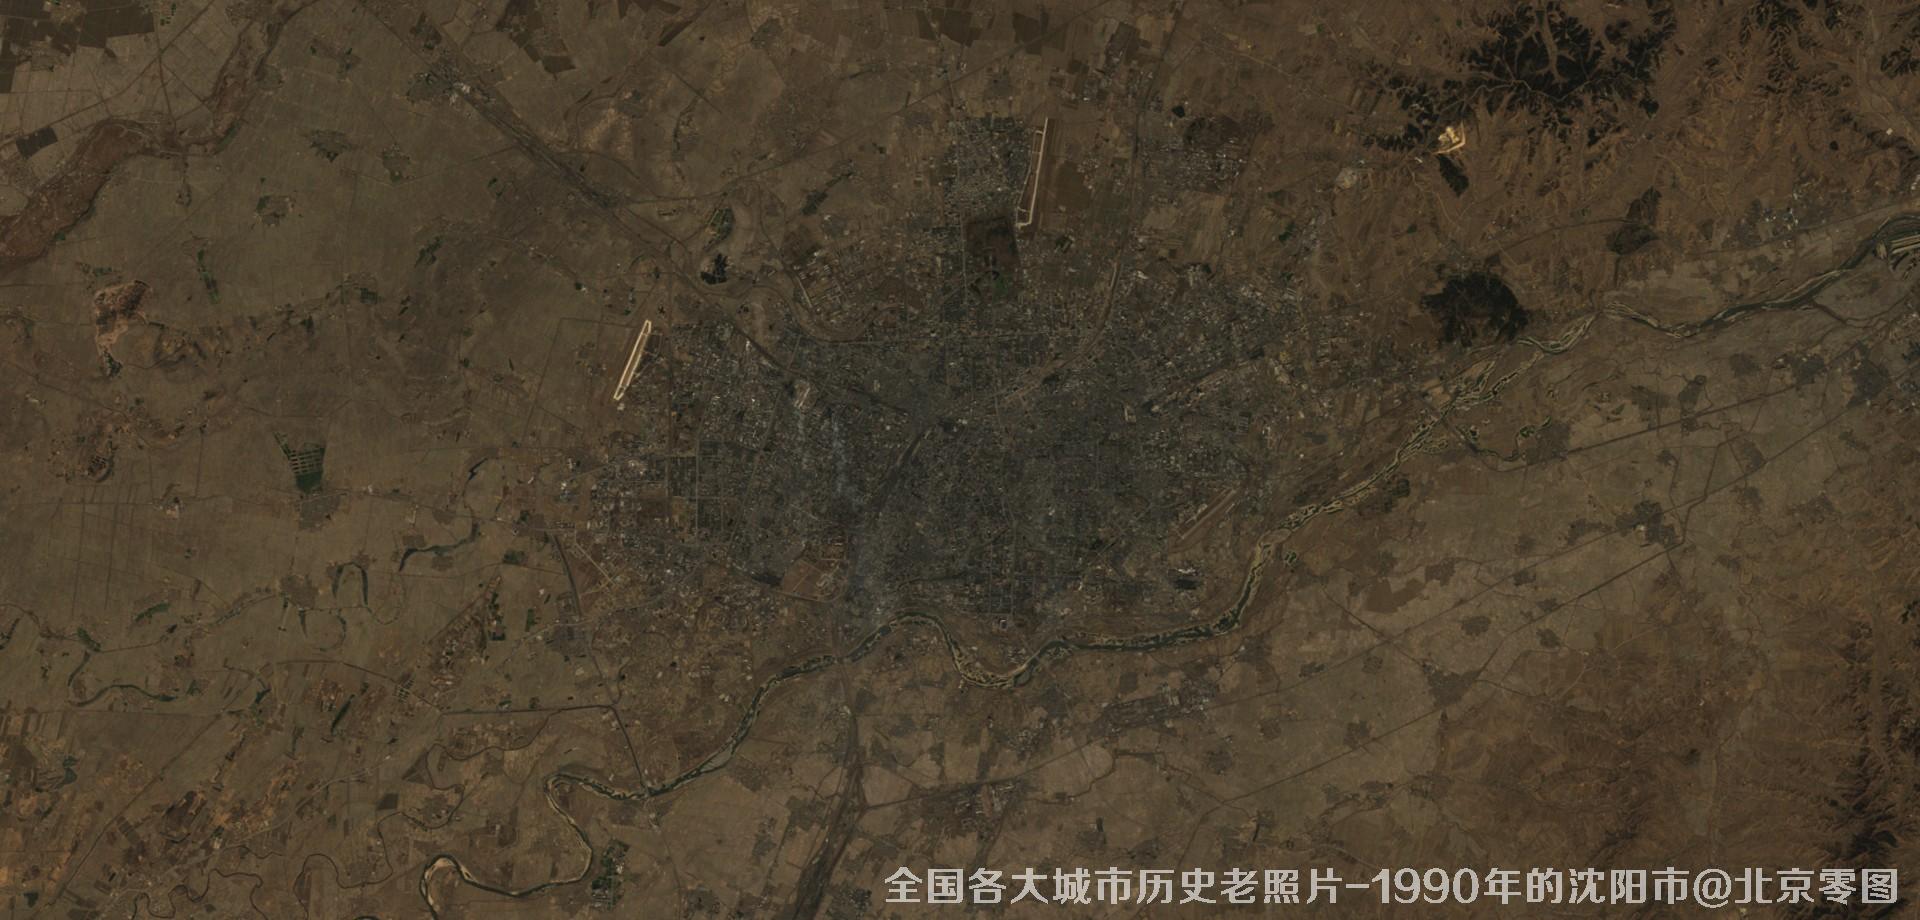 美国Landsat卫星拍摄的1990年的辽宁省沈阳市历史卫星影像图